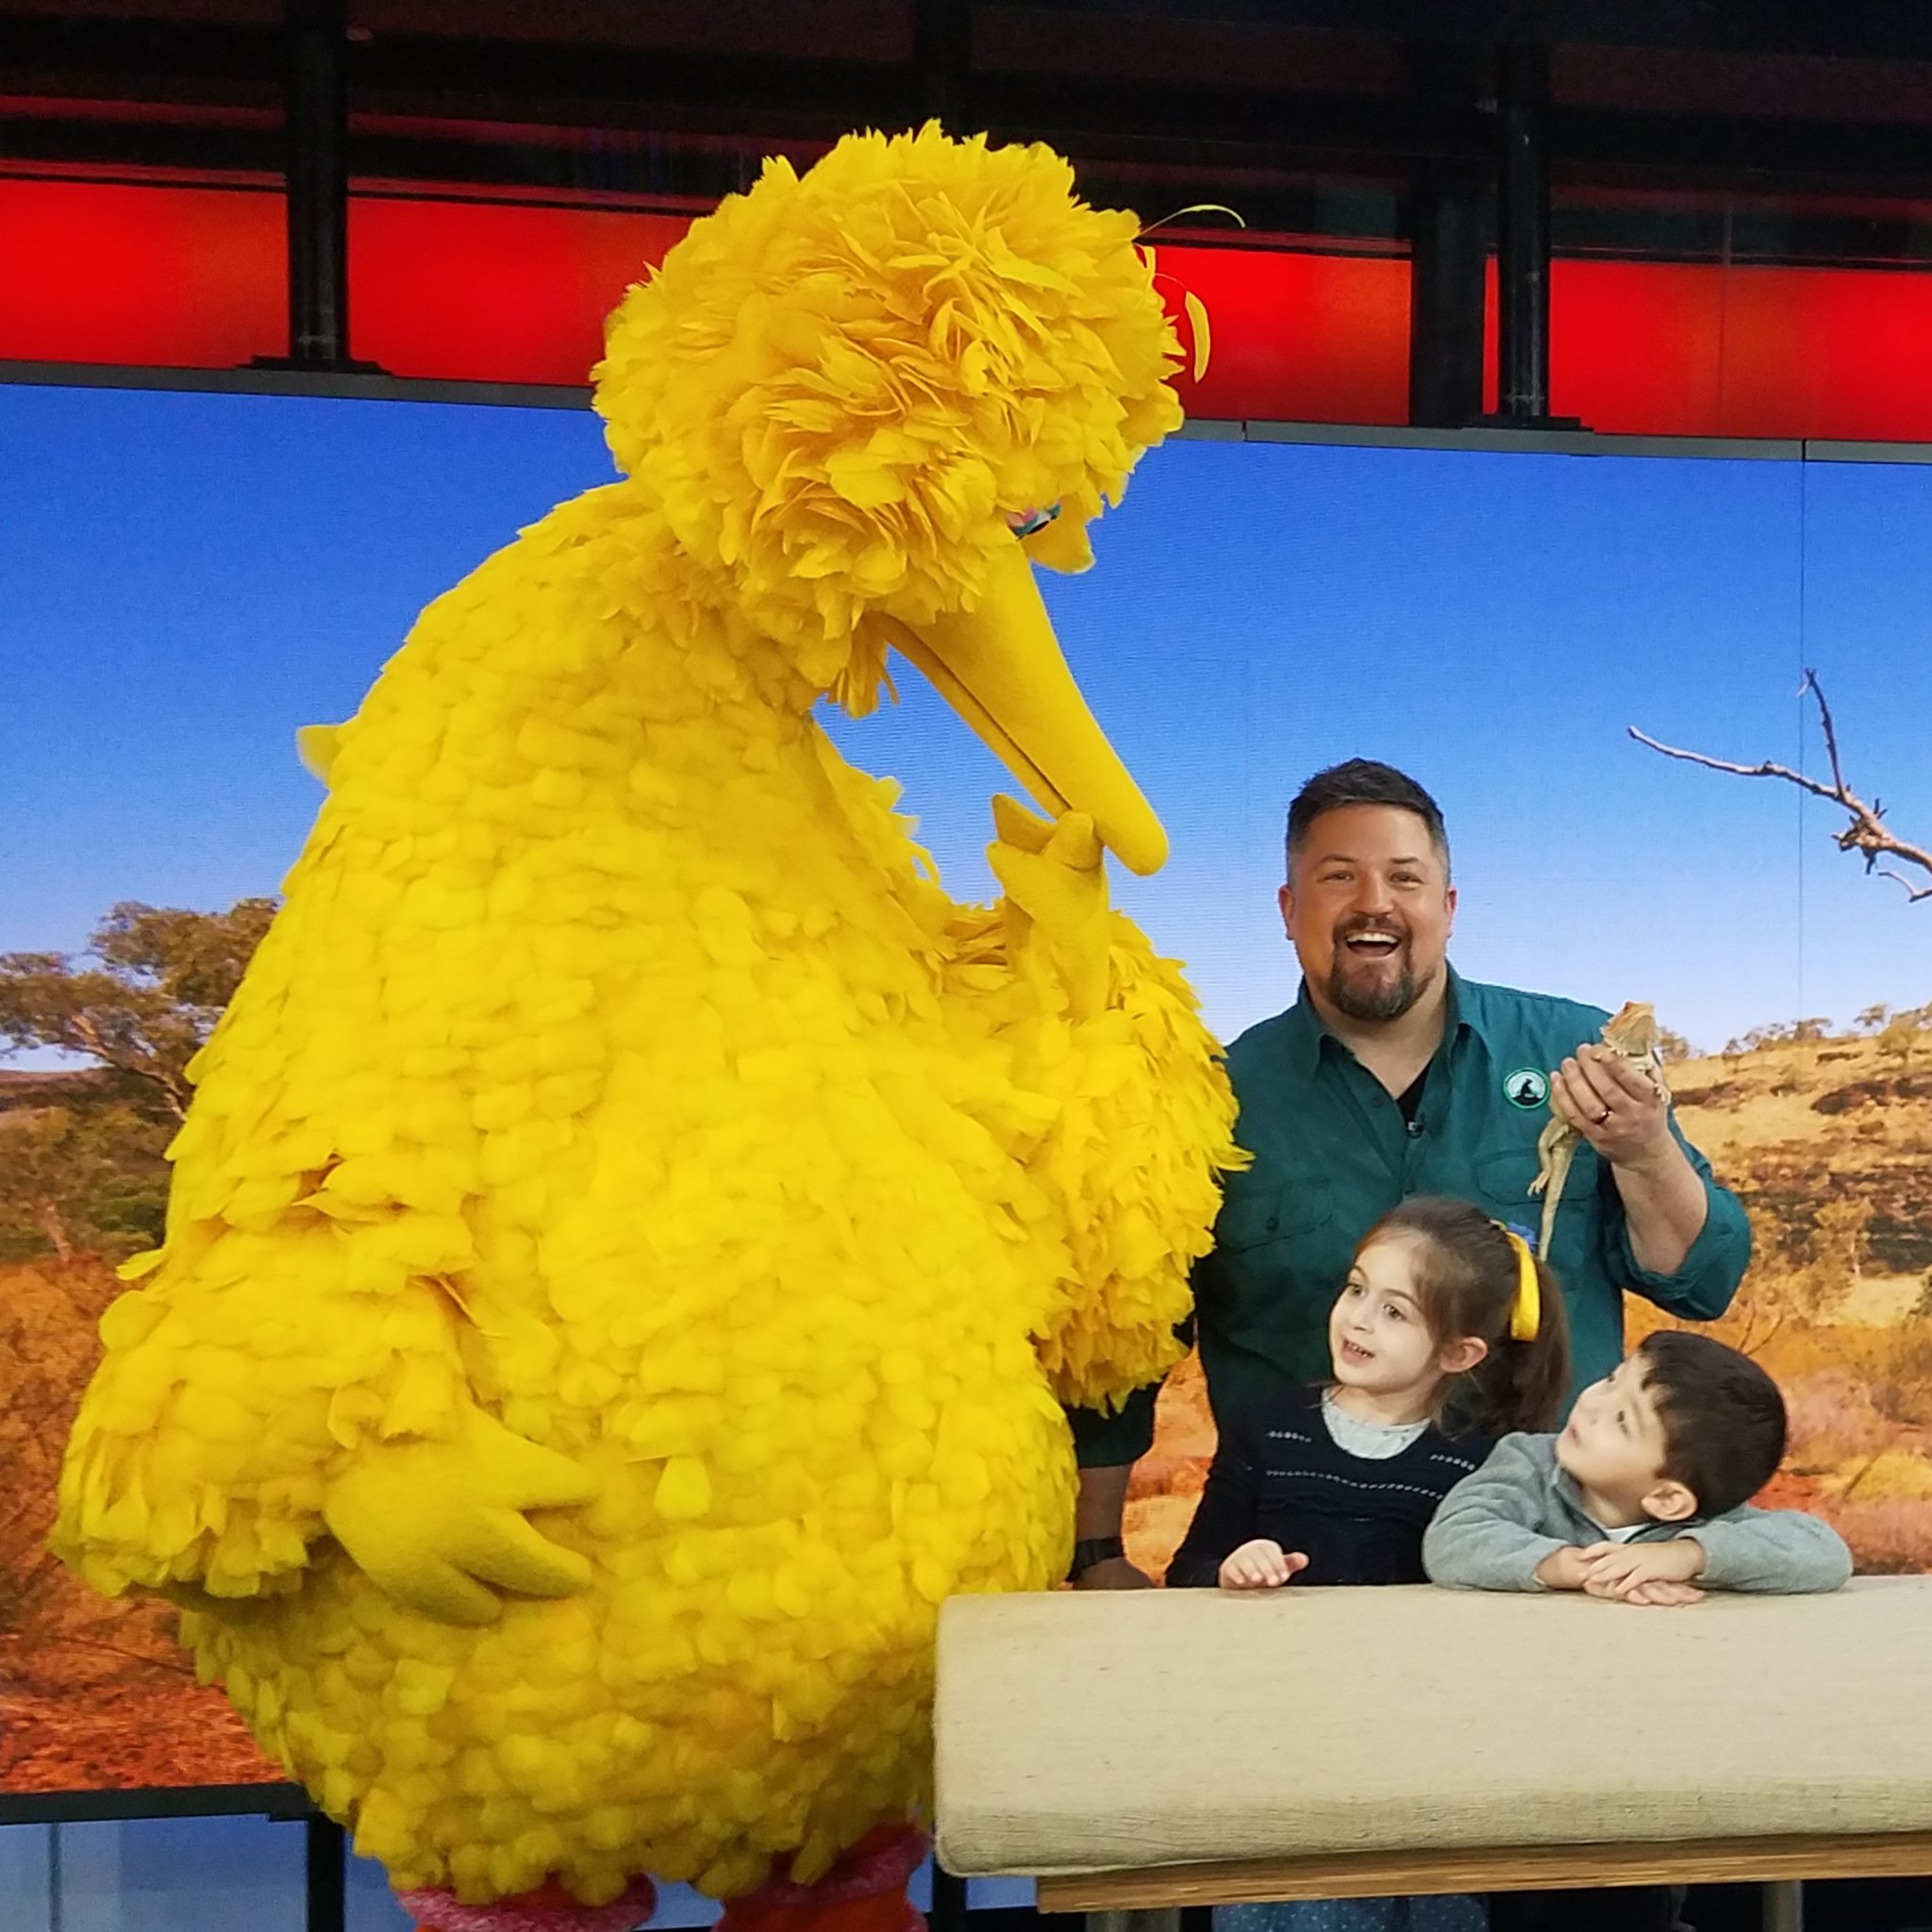 David Mizejewski and Big Bird on the Today Show